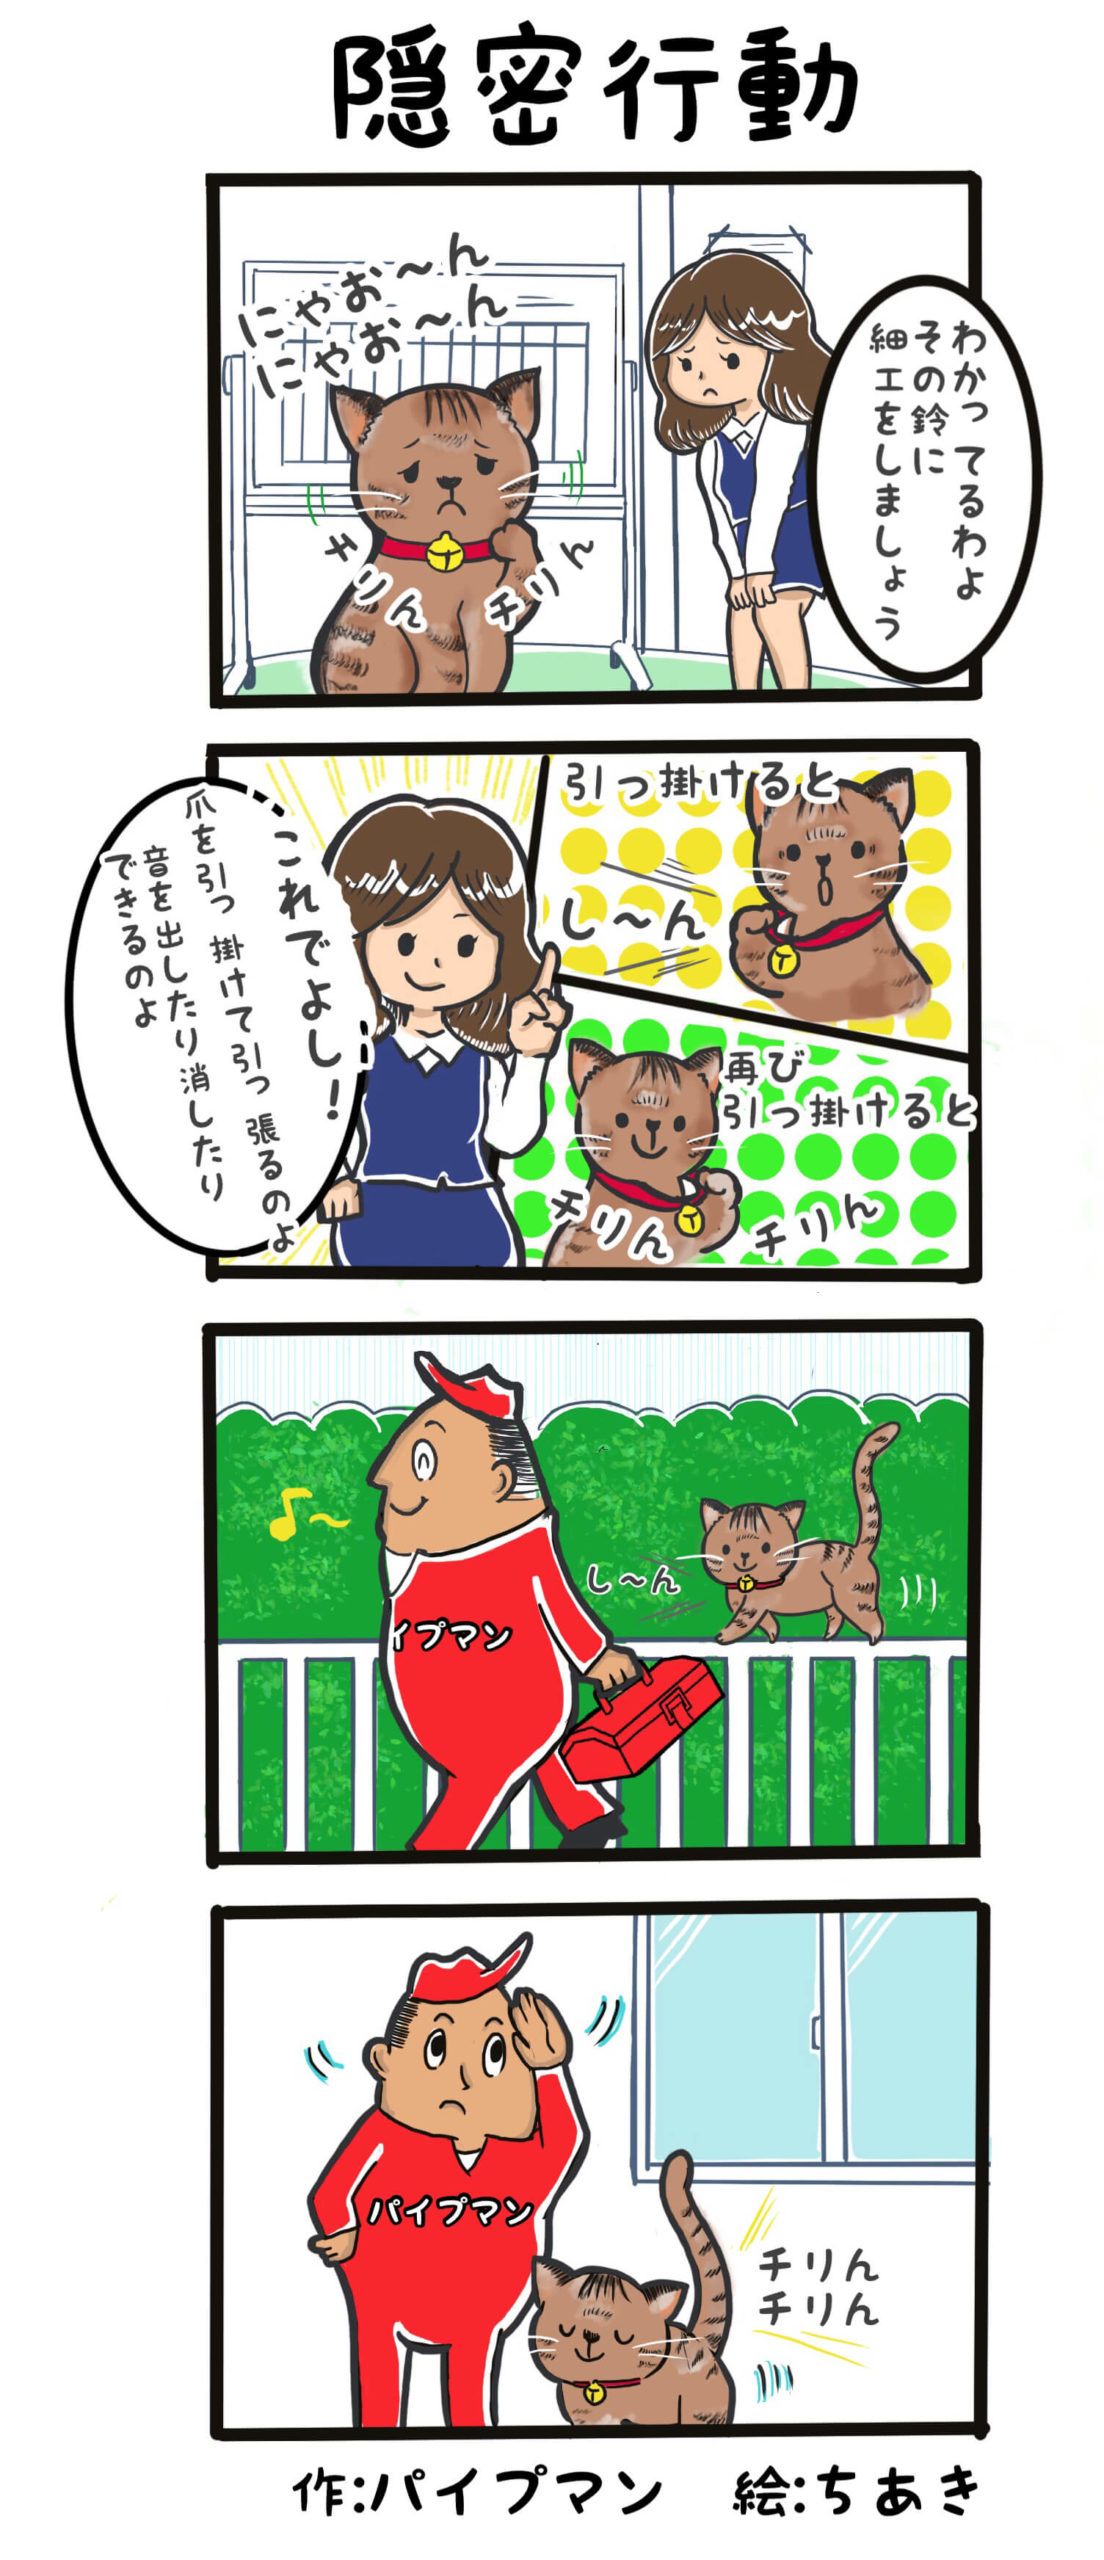 パイプマン四コマ漫画第26話